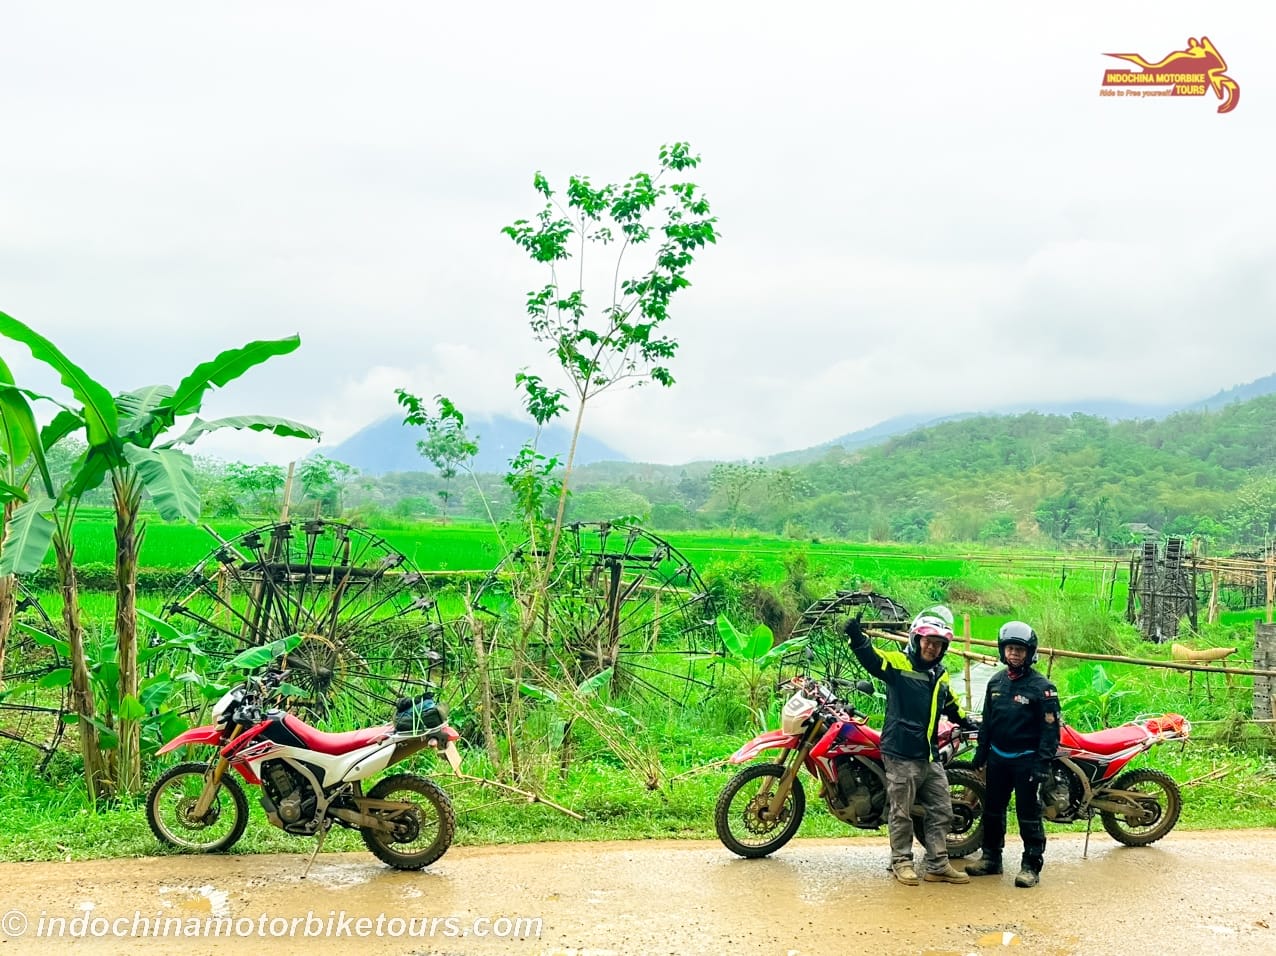 Scenic Vietnam Motorcycle Tour From Hanoi to Long Coc, Da Bac, Pu Luong, Ninh Binh